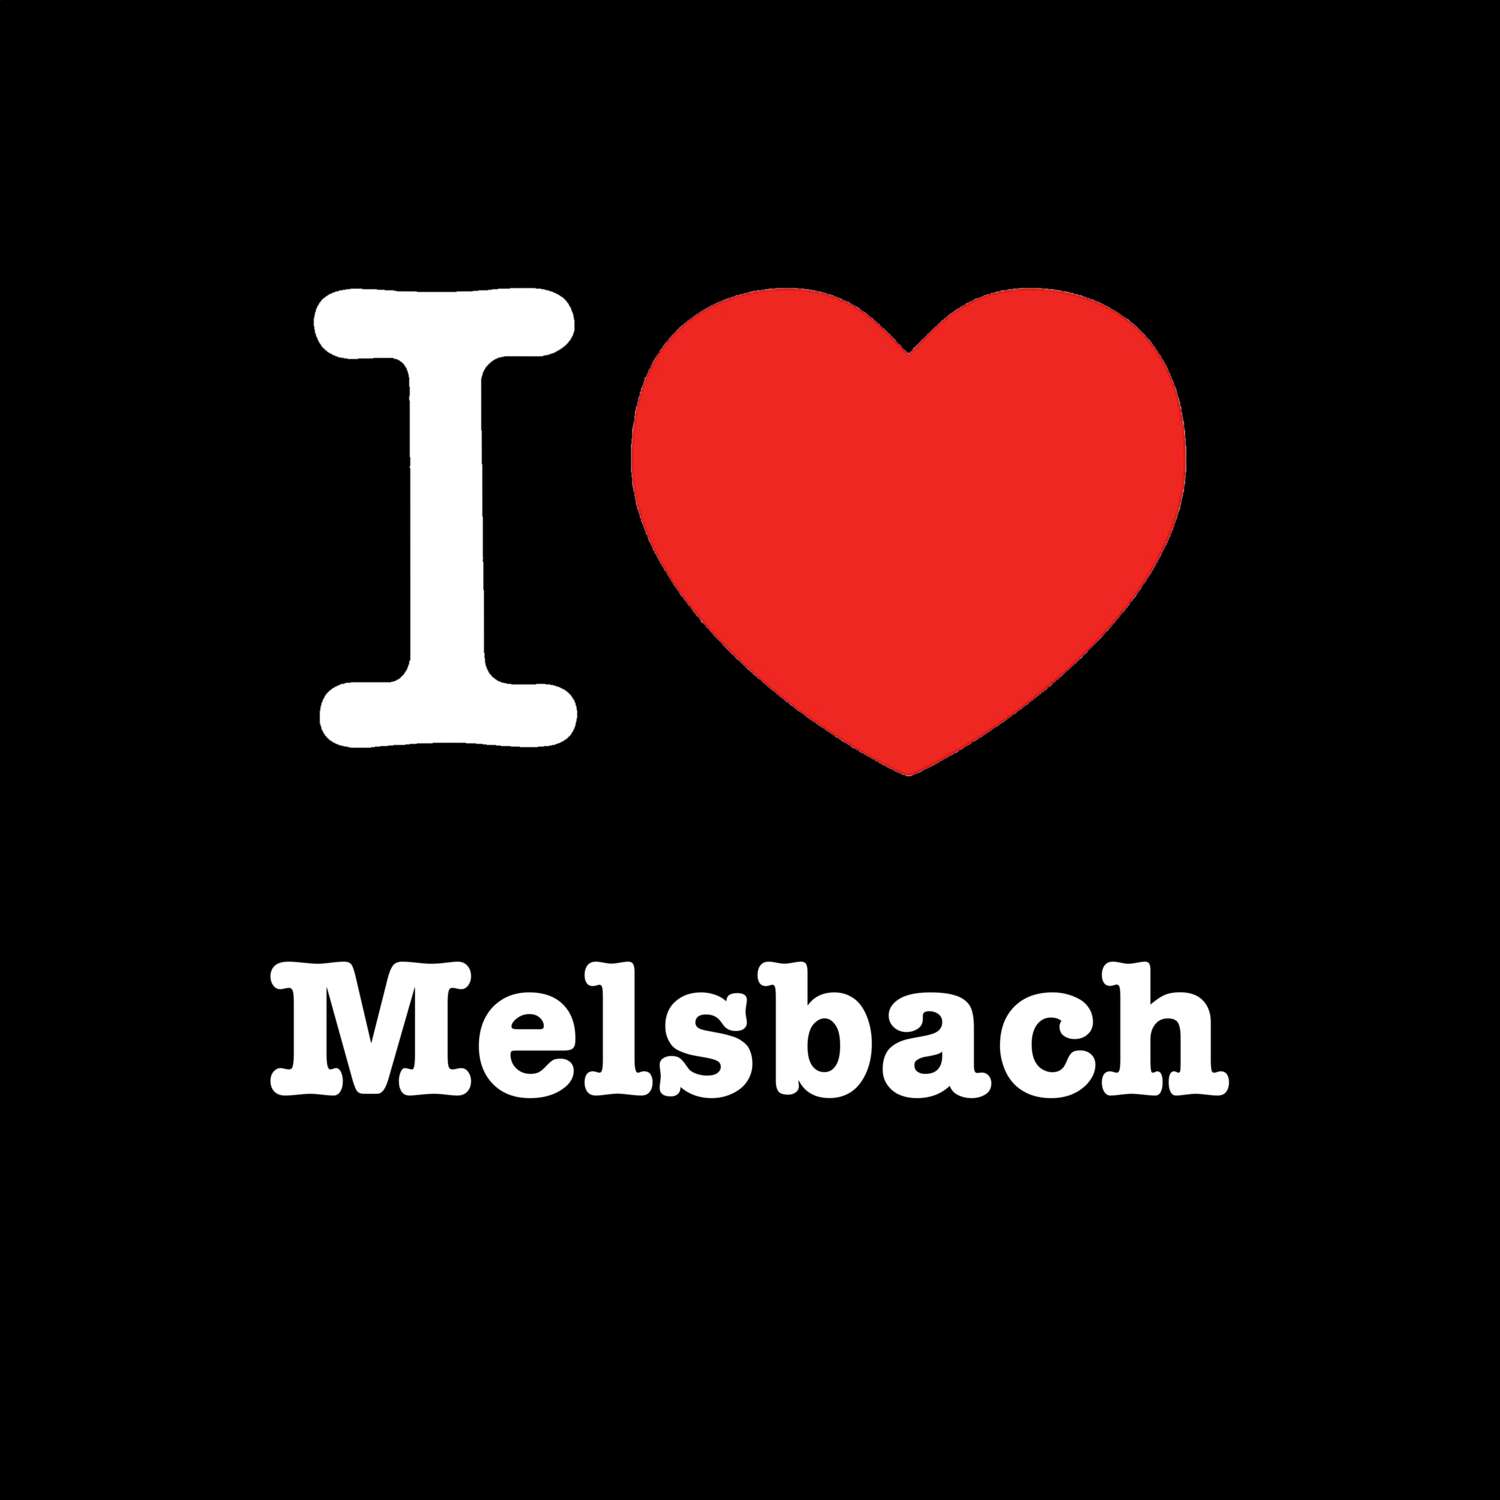 Melsbach T-Shirt »I love«